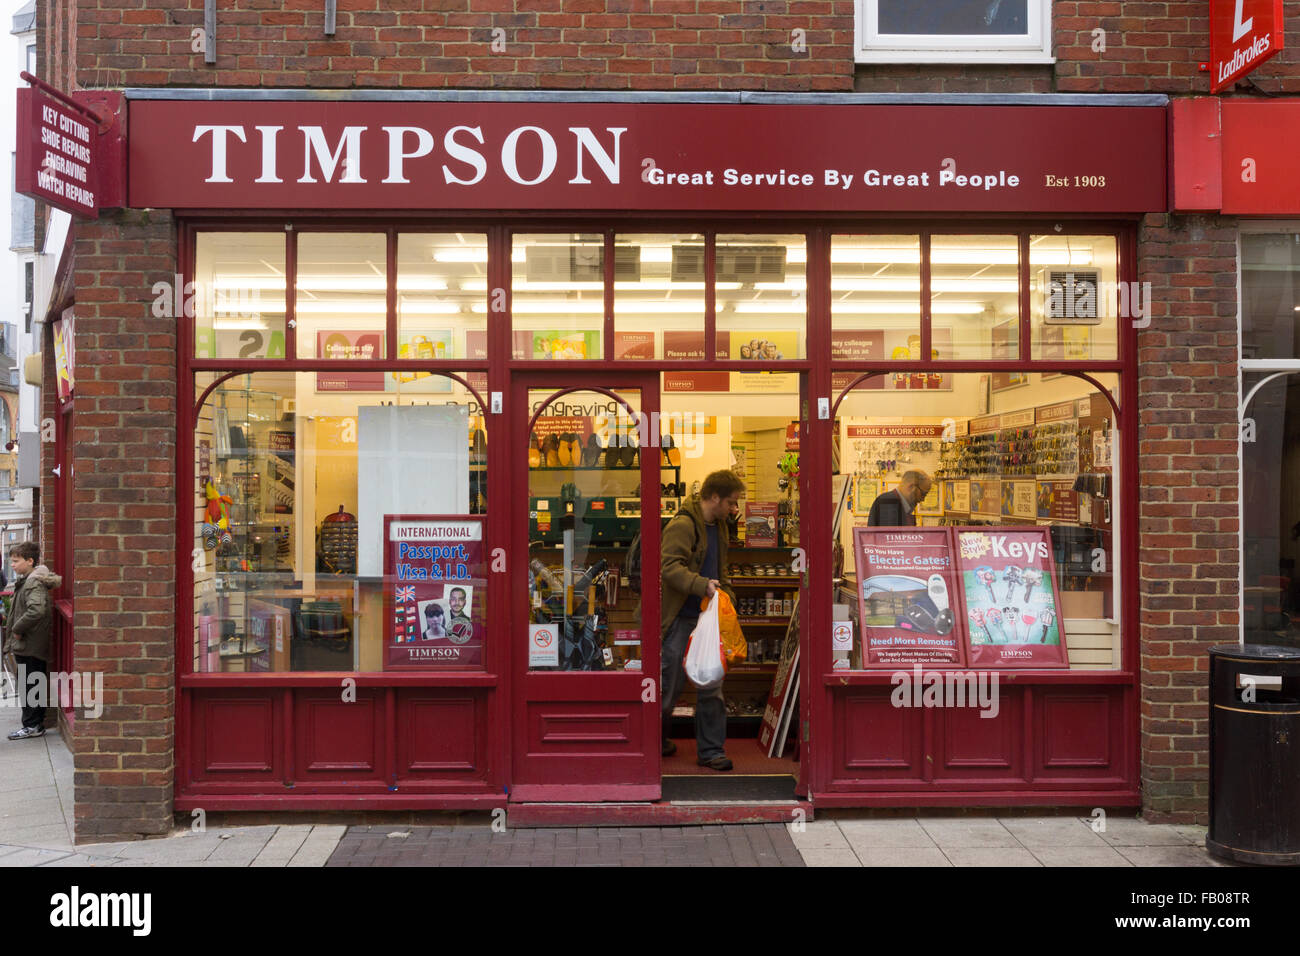 Timpson ist ein britischer multinationaler Einzelhändler, der sich auf Schuhreparaturen, Schlüsselschneiden, Schlosserdienste und Gravuren spezialisiert hat. London Street, Basingstoke, Großbritannien Stockfoto